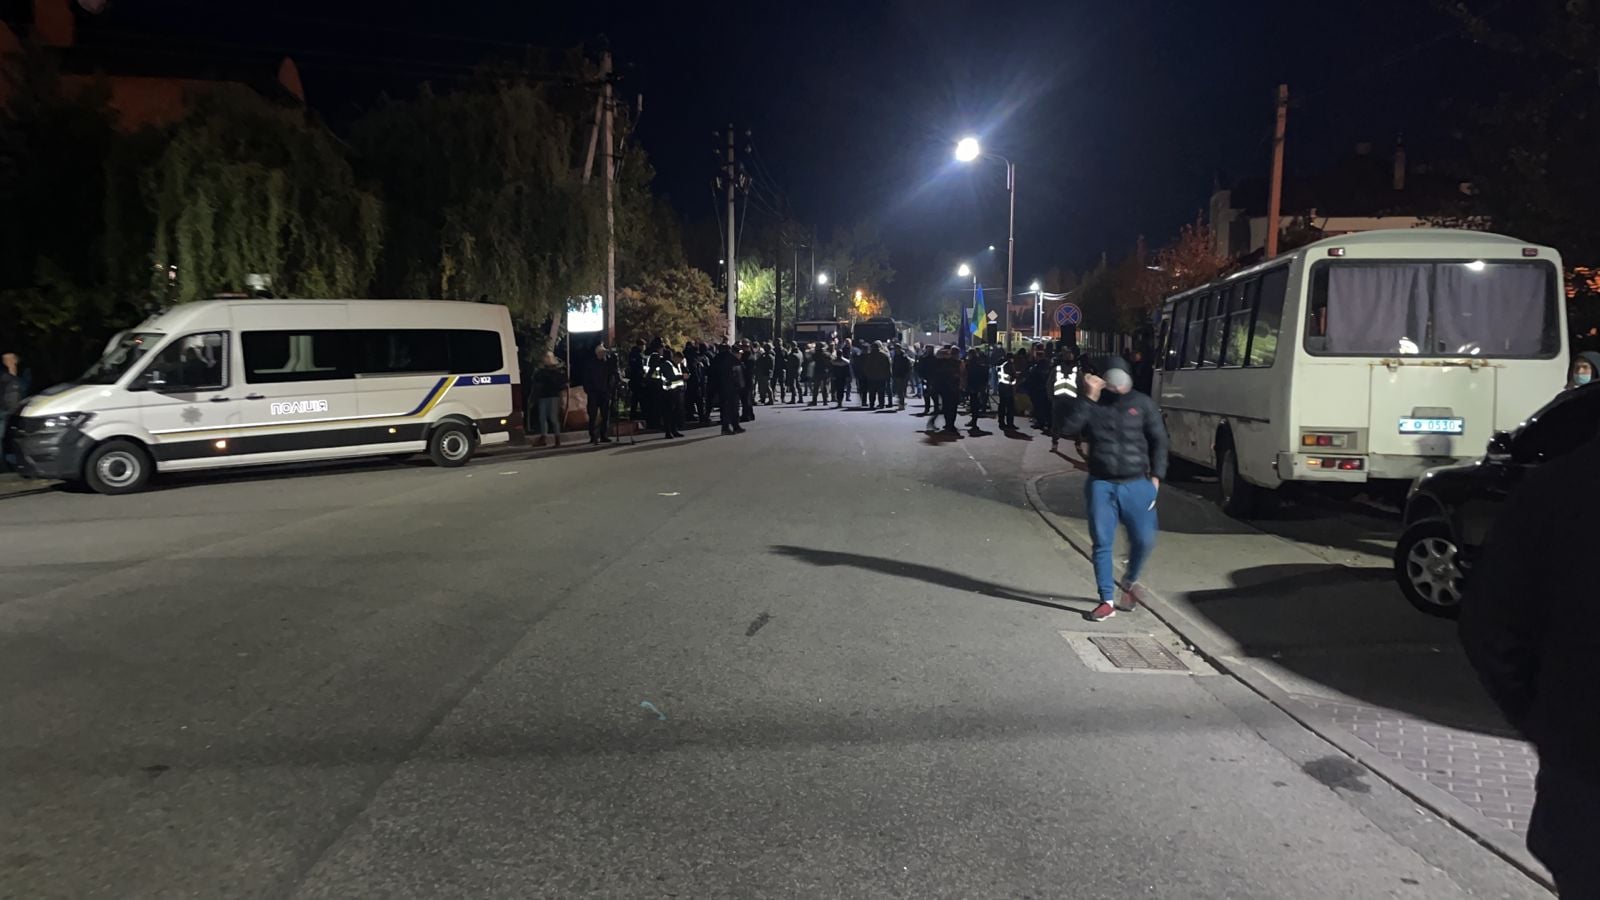 Акция в Козине: возле дома Порошенко произошли столкновения – фото, видео